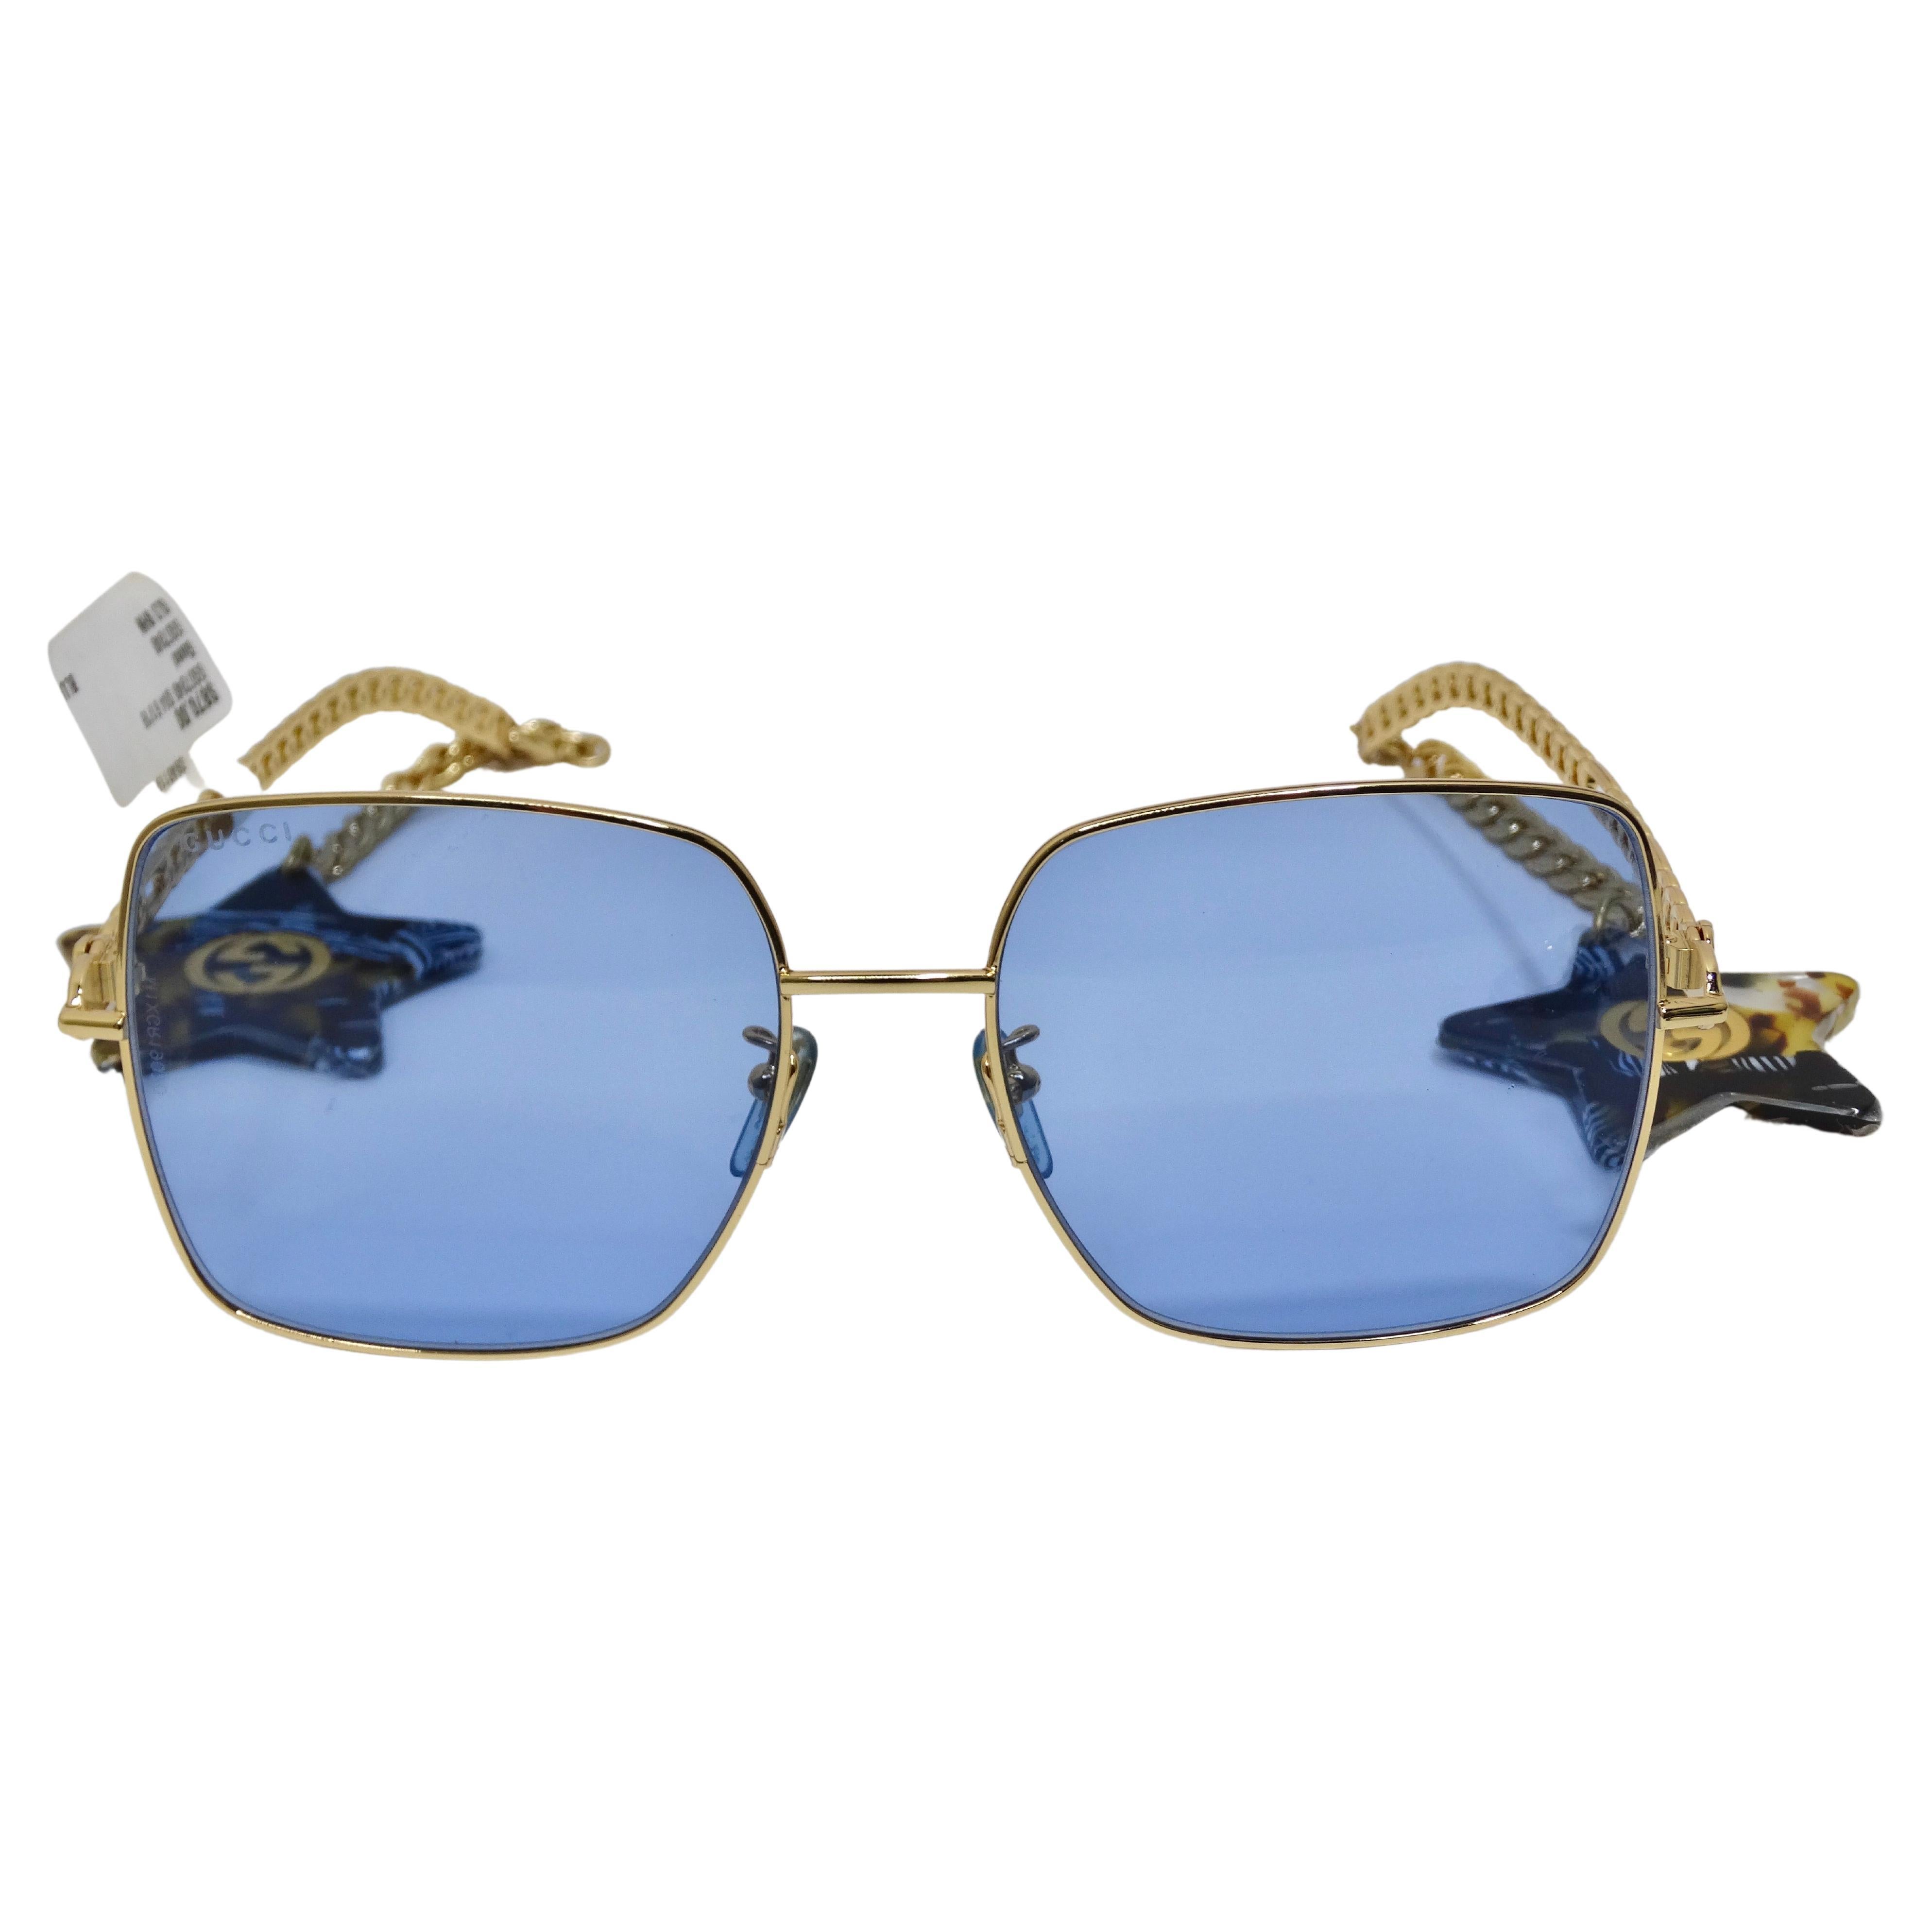 Gucci lunettes de soleil à pendentif étoile bleue et or